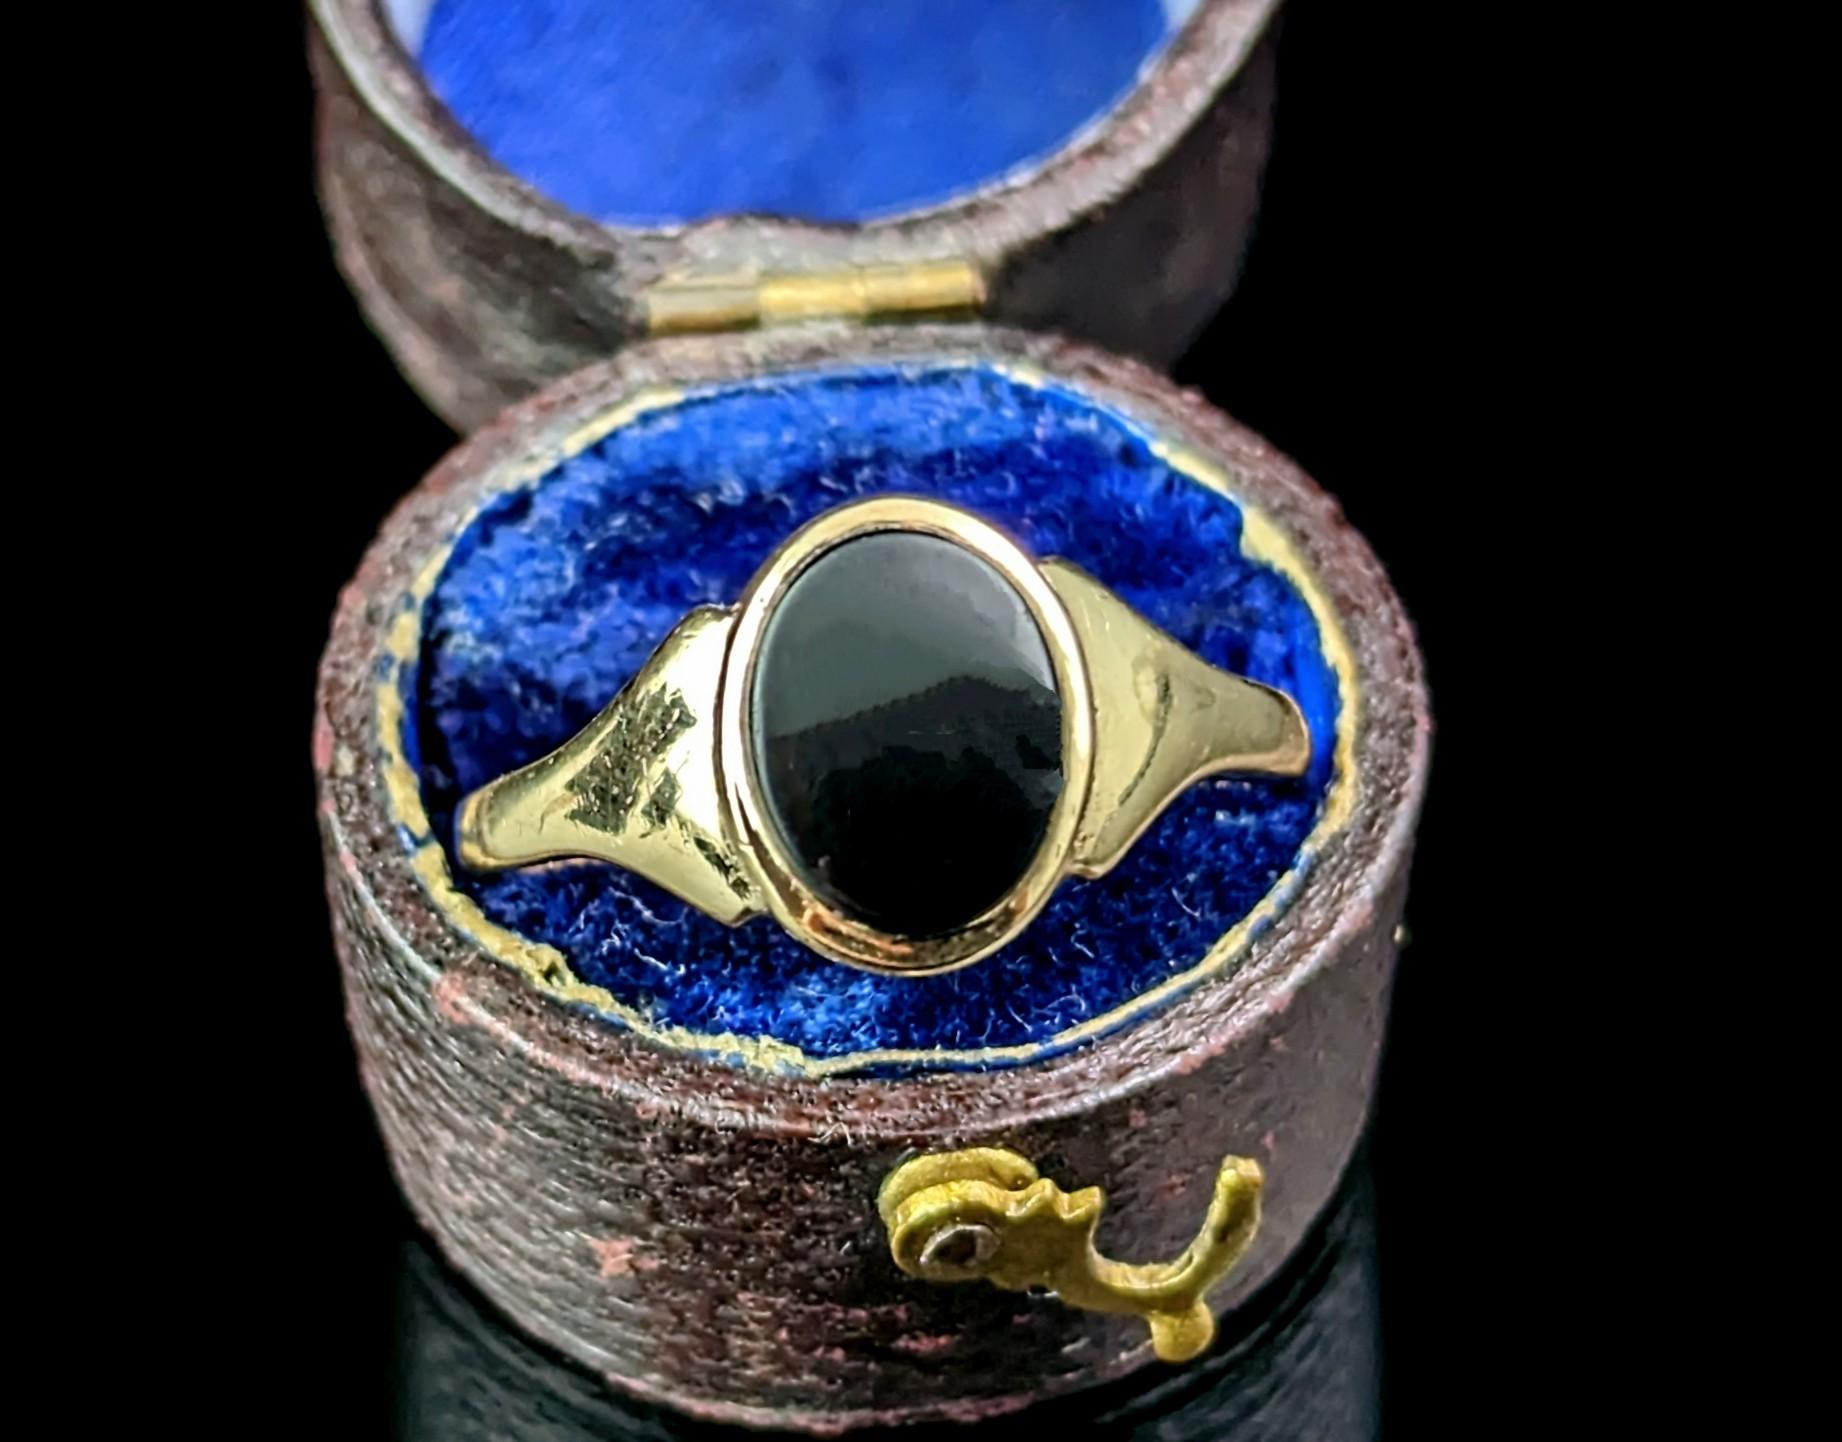 Dieser stilvolle Siegelring aus 9-karätigem Gold und schwarzem Onyx ist der perfekte Ring für den kleinen Finger!

Es hat eine ovale Form Gesicht mit einem reichen inky schwarzen Onyx Stein gesetzt, hat dies nicht geschnitzt worden, so dass der